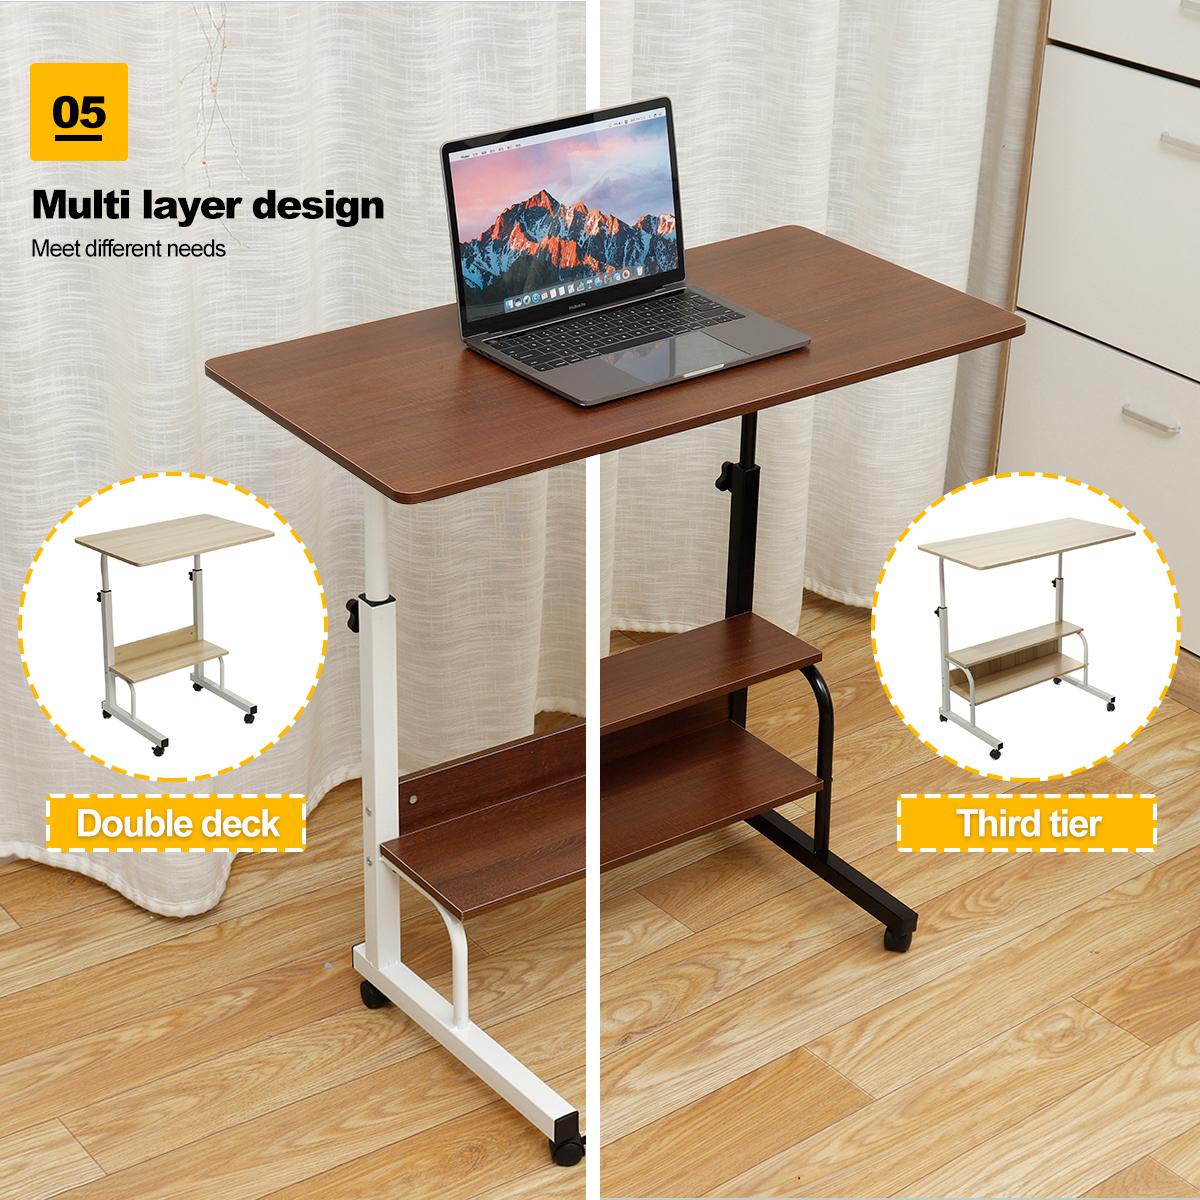 Adjustable-Laptop-Desk-Movable-Bed-Desk-Writing-Small-Desk-Lifting-Desk-Mobile-Bedside-Table-for-Hom-1777082-7